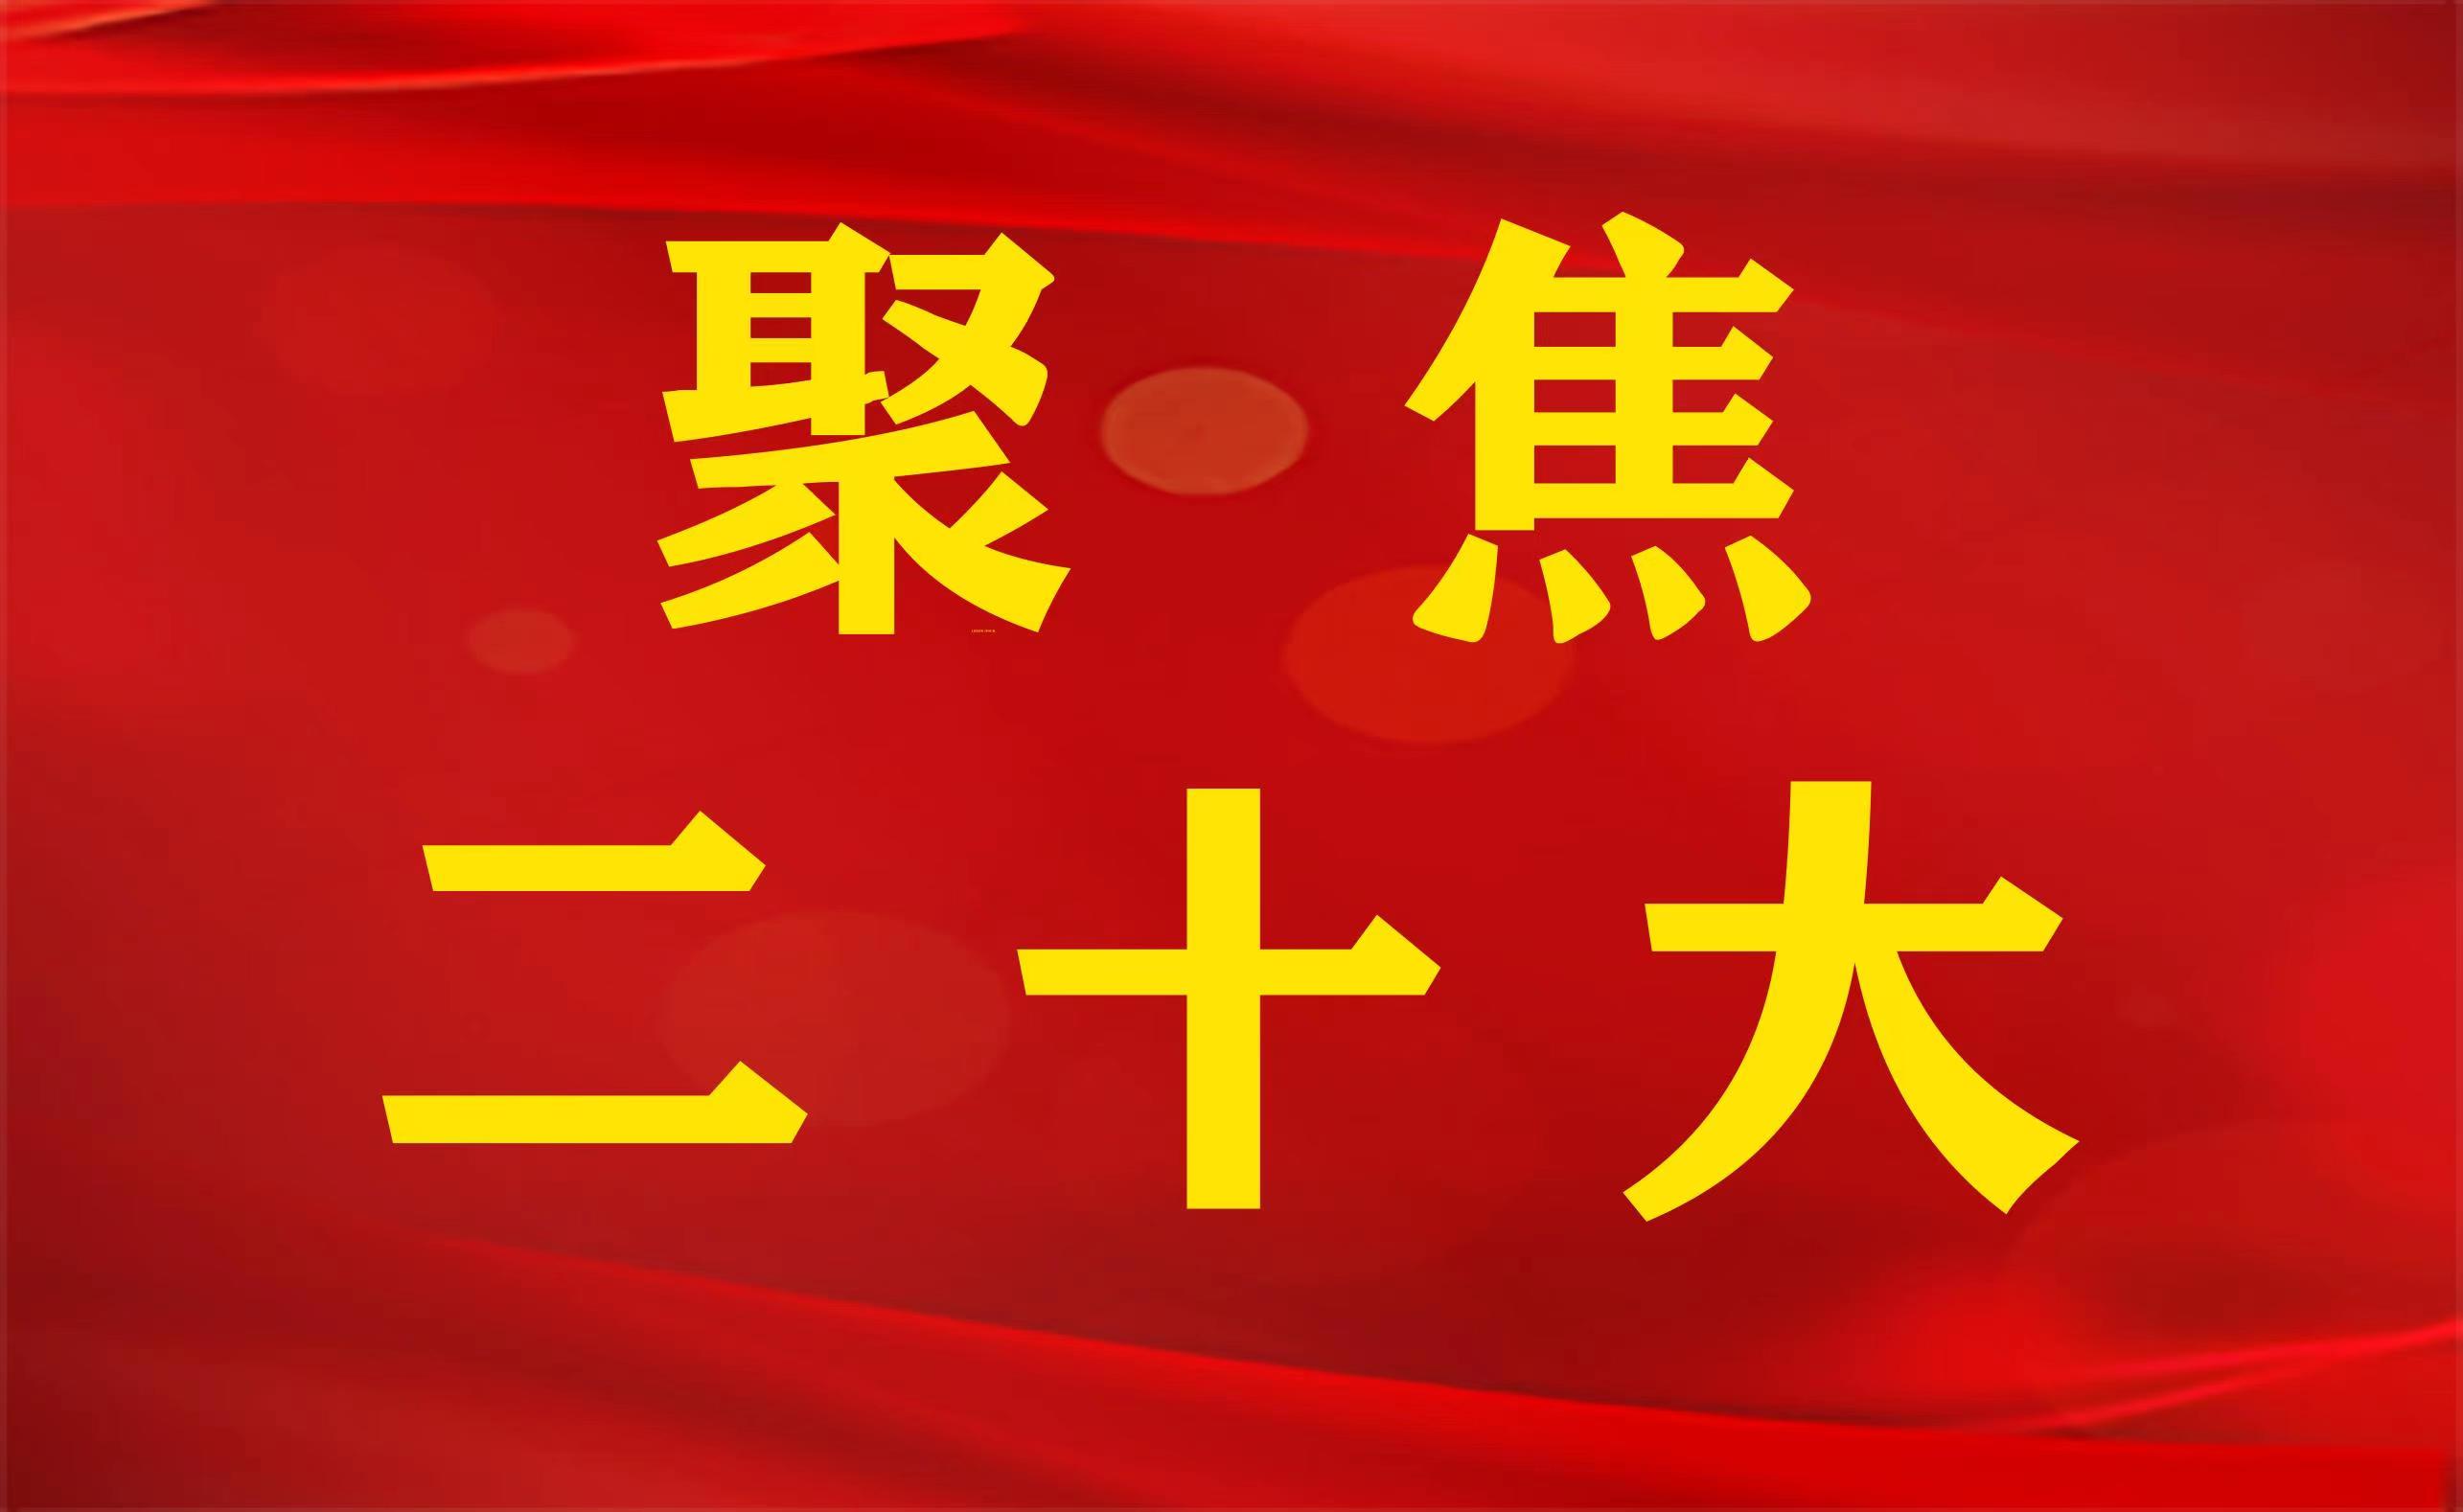 <b>“中国共产党是人民的党”</b>